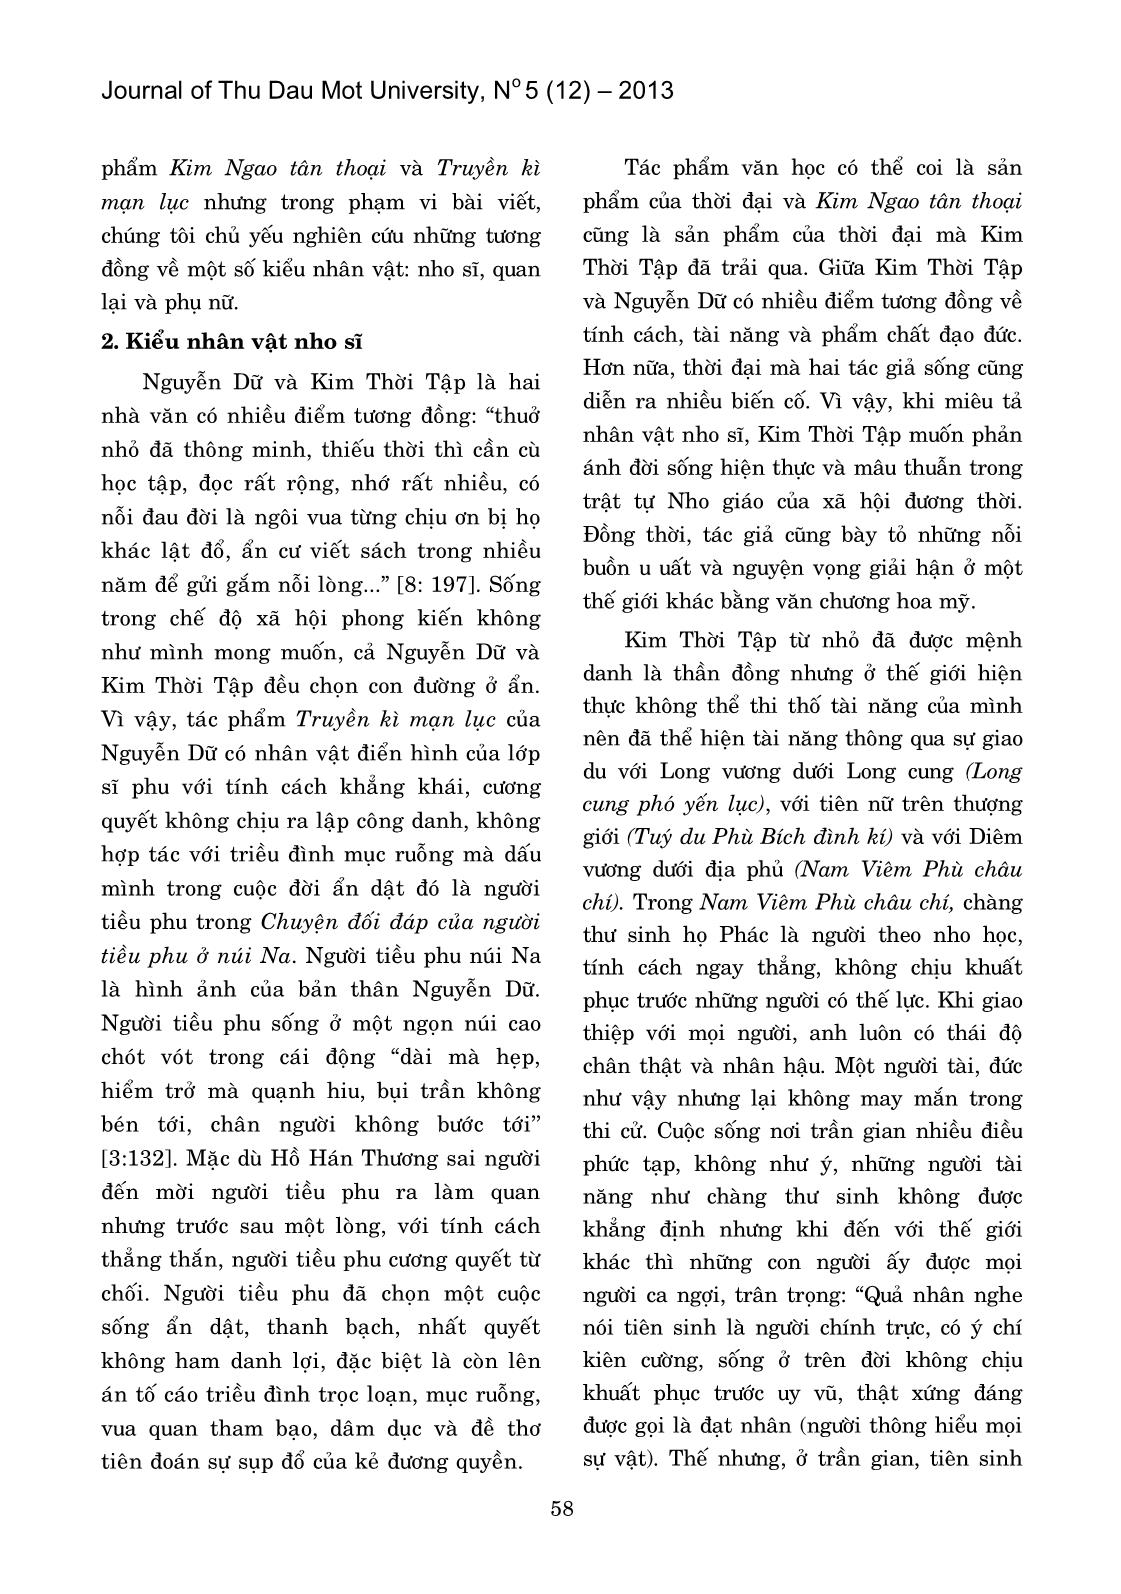 Một số tương đồng về các kiểu nhân vật trong Kim Ngao Tân Thoại (Kim Thời tập) và Truyền Kì Mạn Lục (Nguyễn Dữ) trang 2